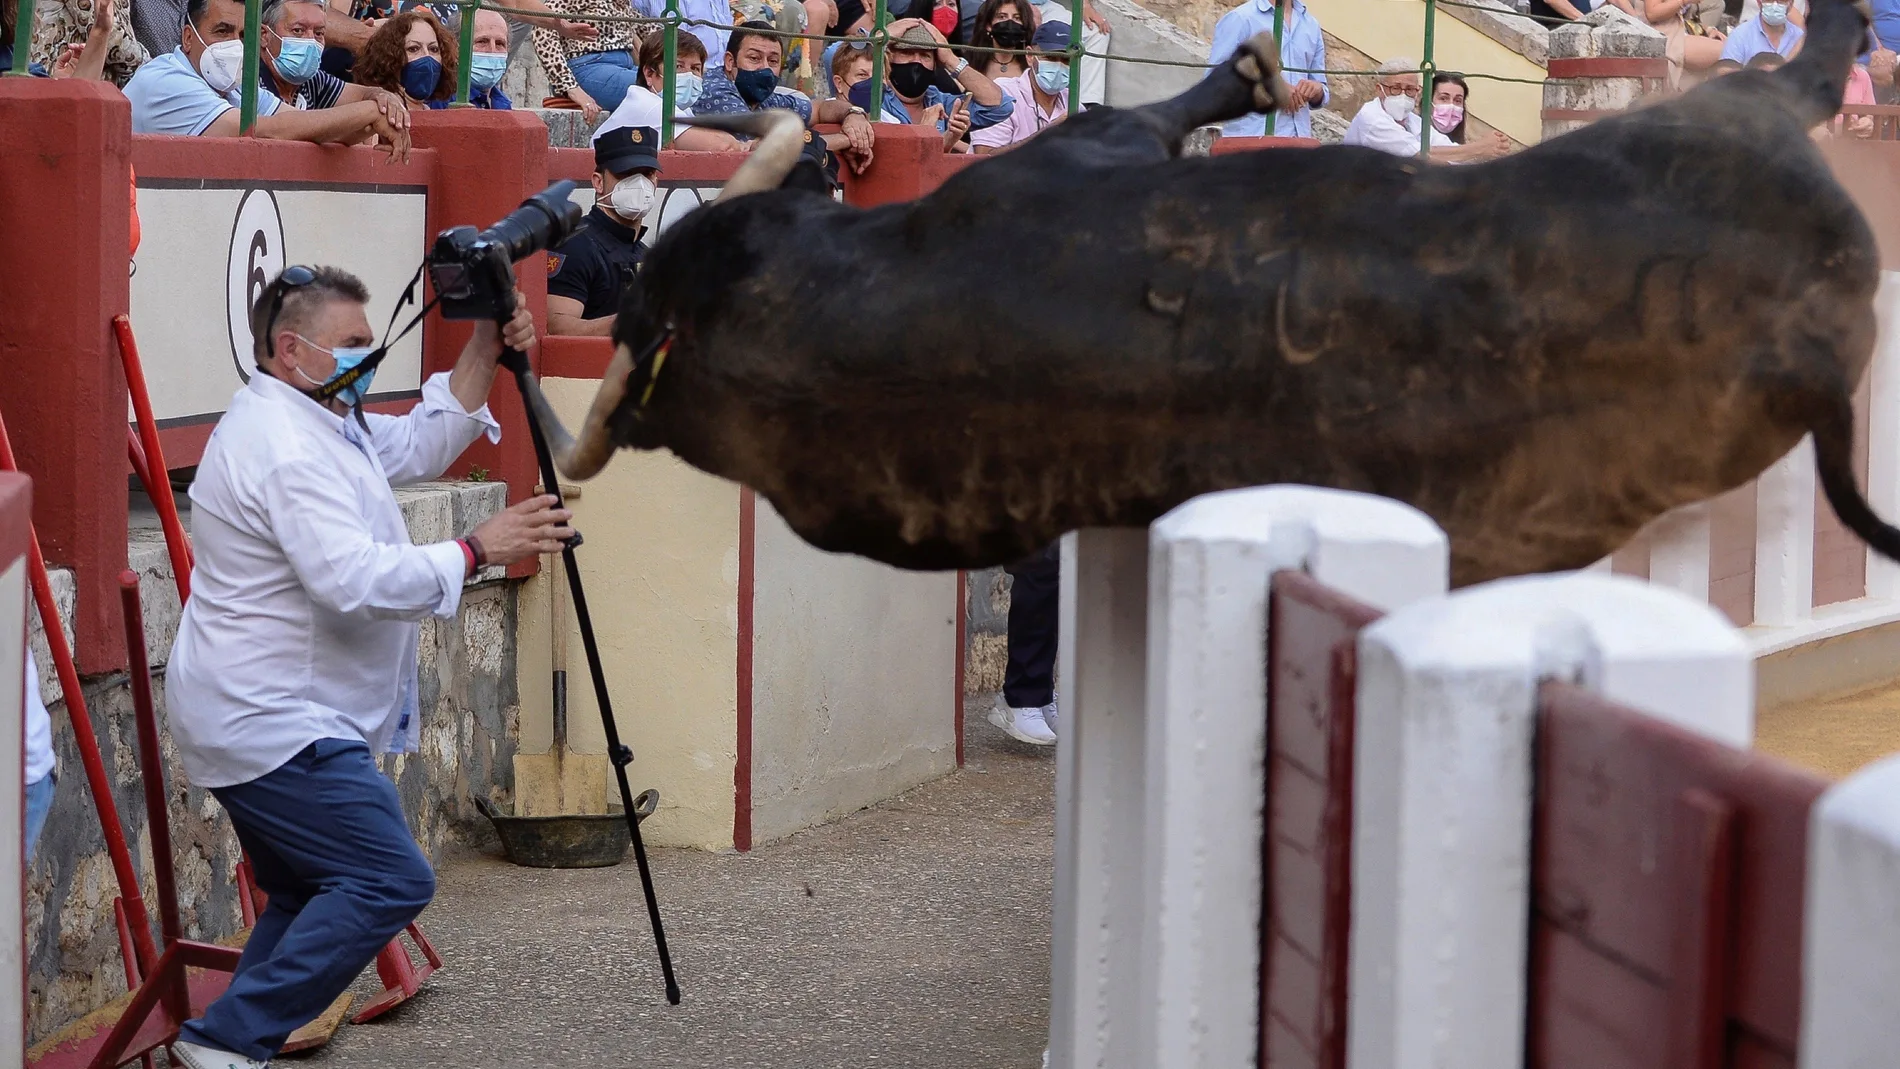 El primer toro de la tarde intenta saltar al callejón en la corrida que tiene lugar en la plaza de Valladolid